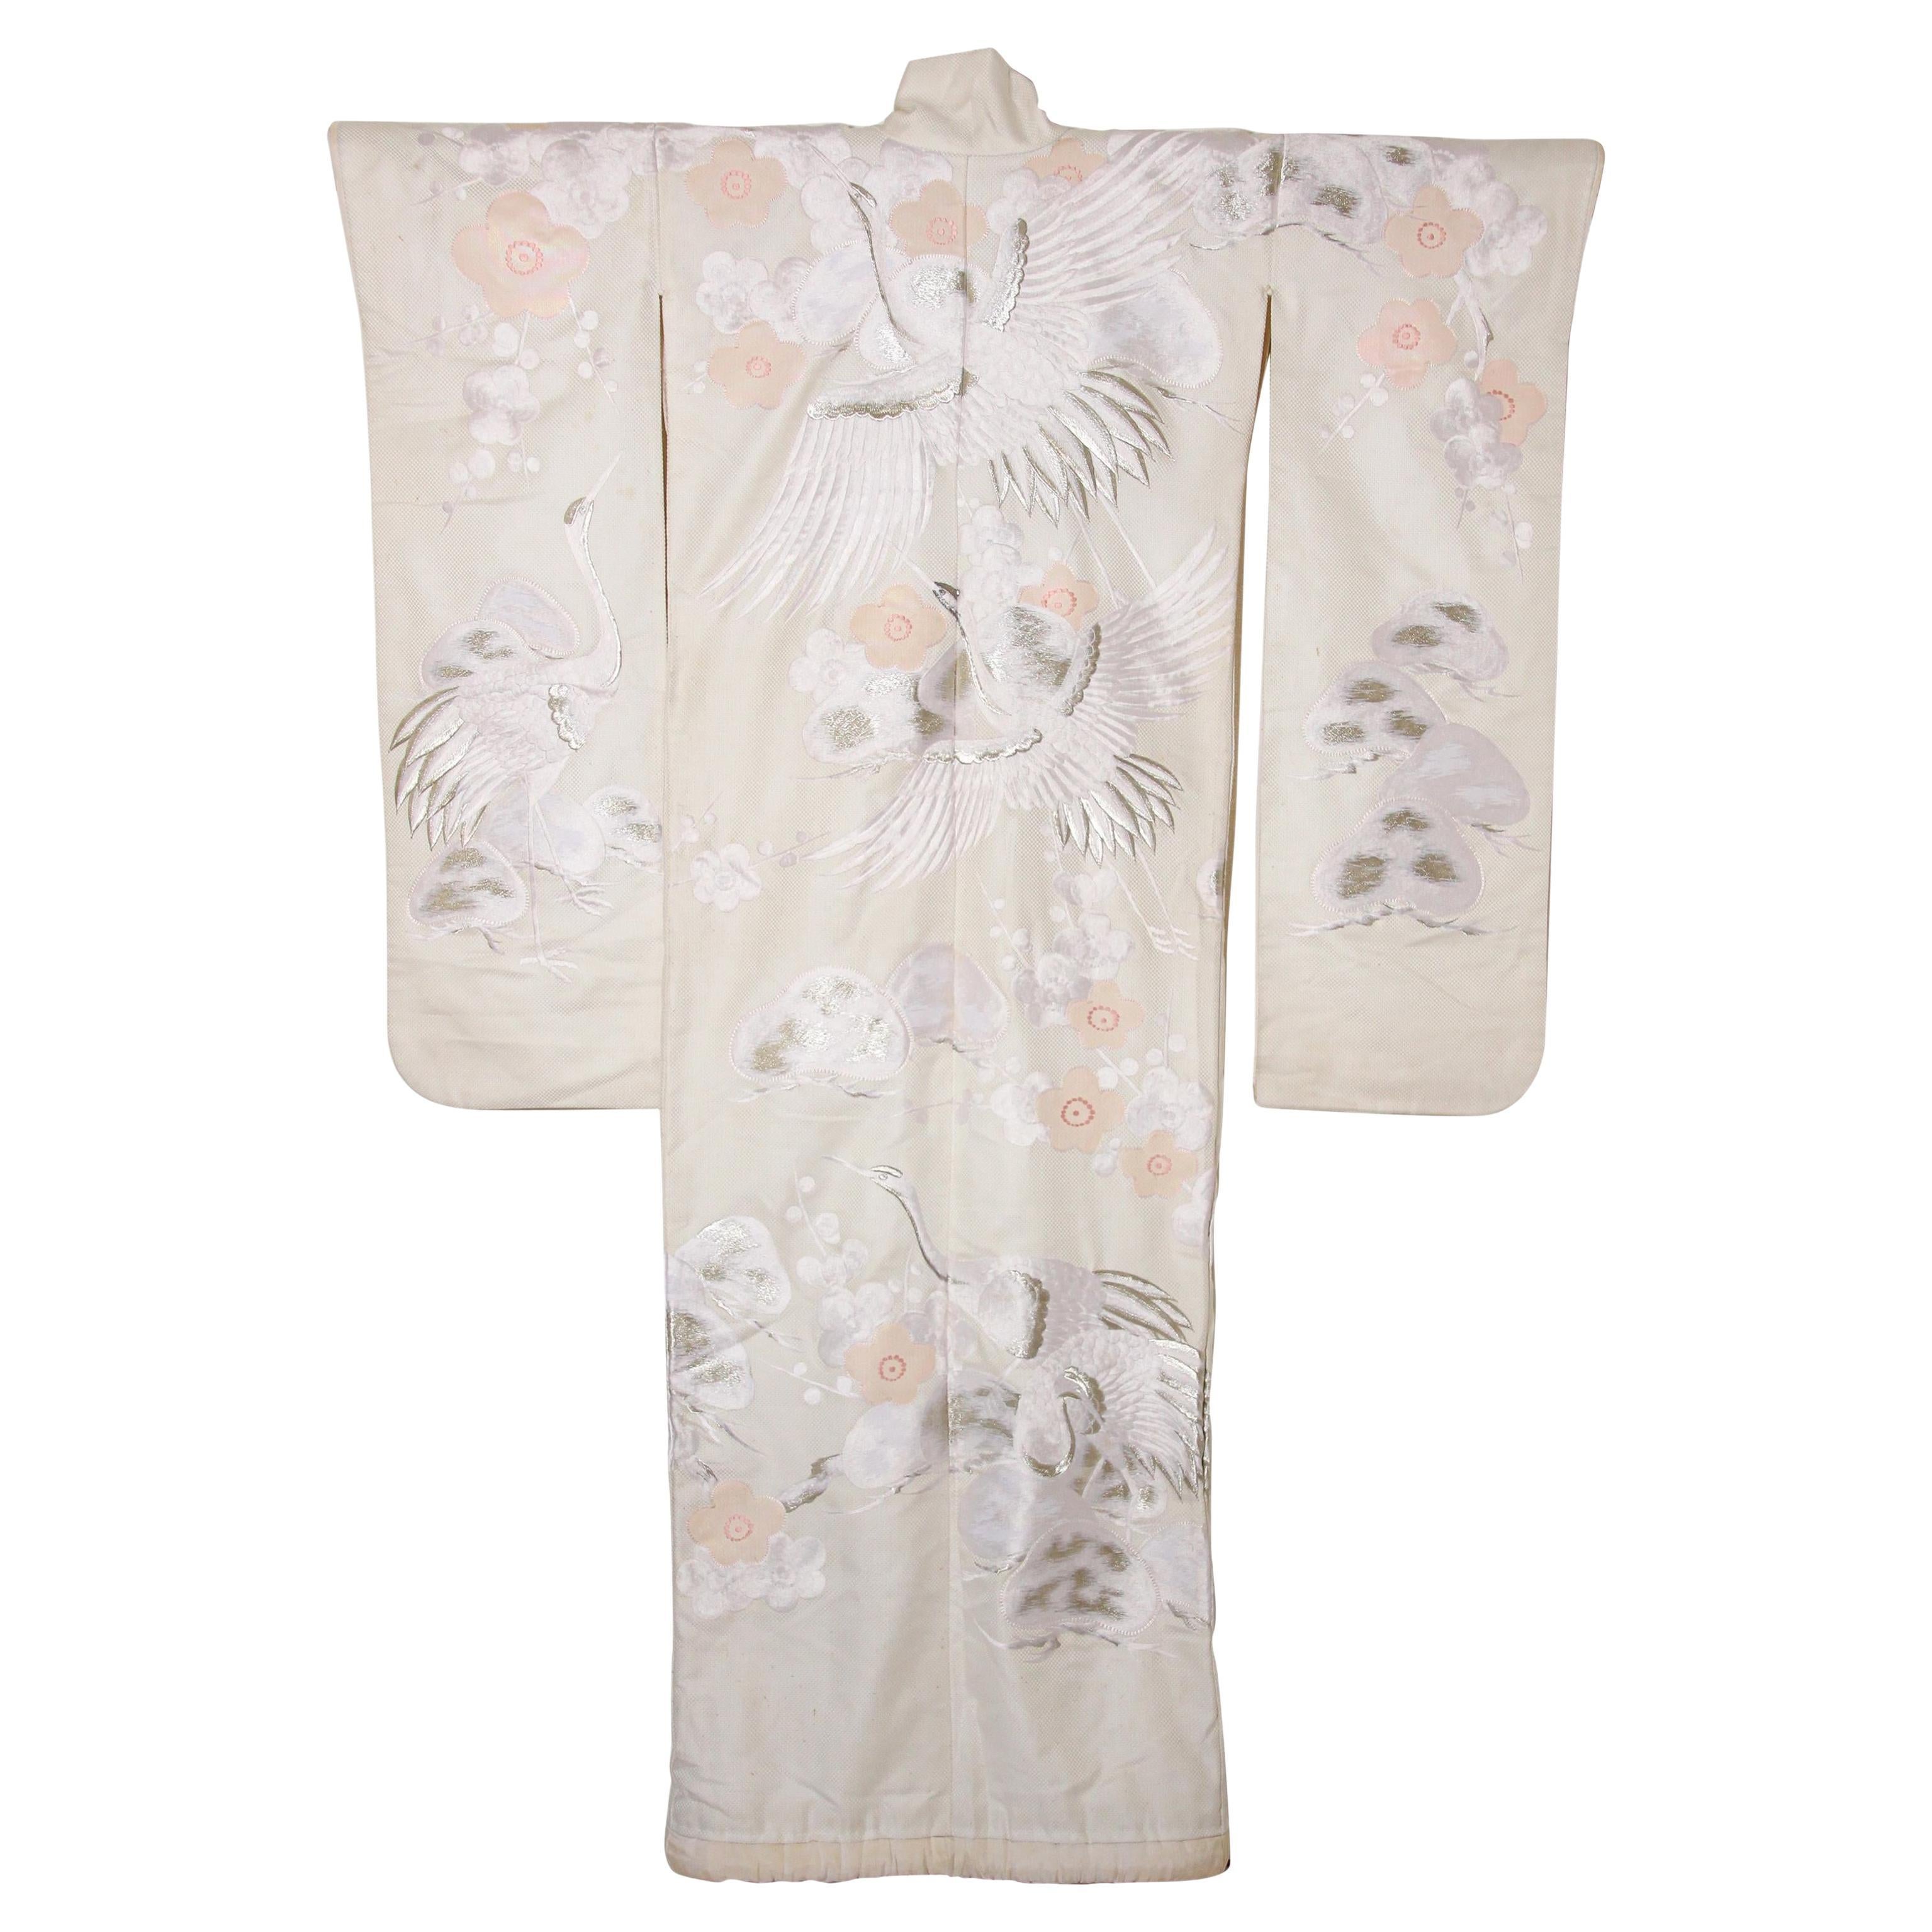 Vintage Collectable Japanese White Silk Ceremonial Wedding Kimono